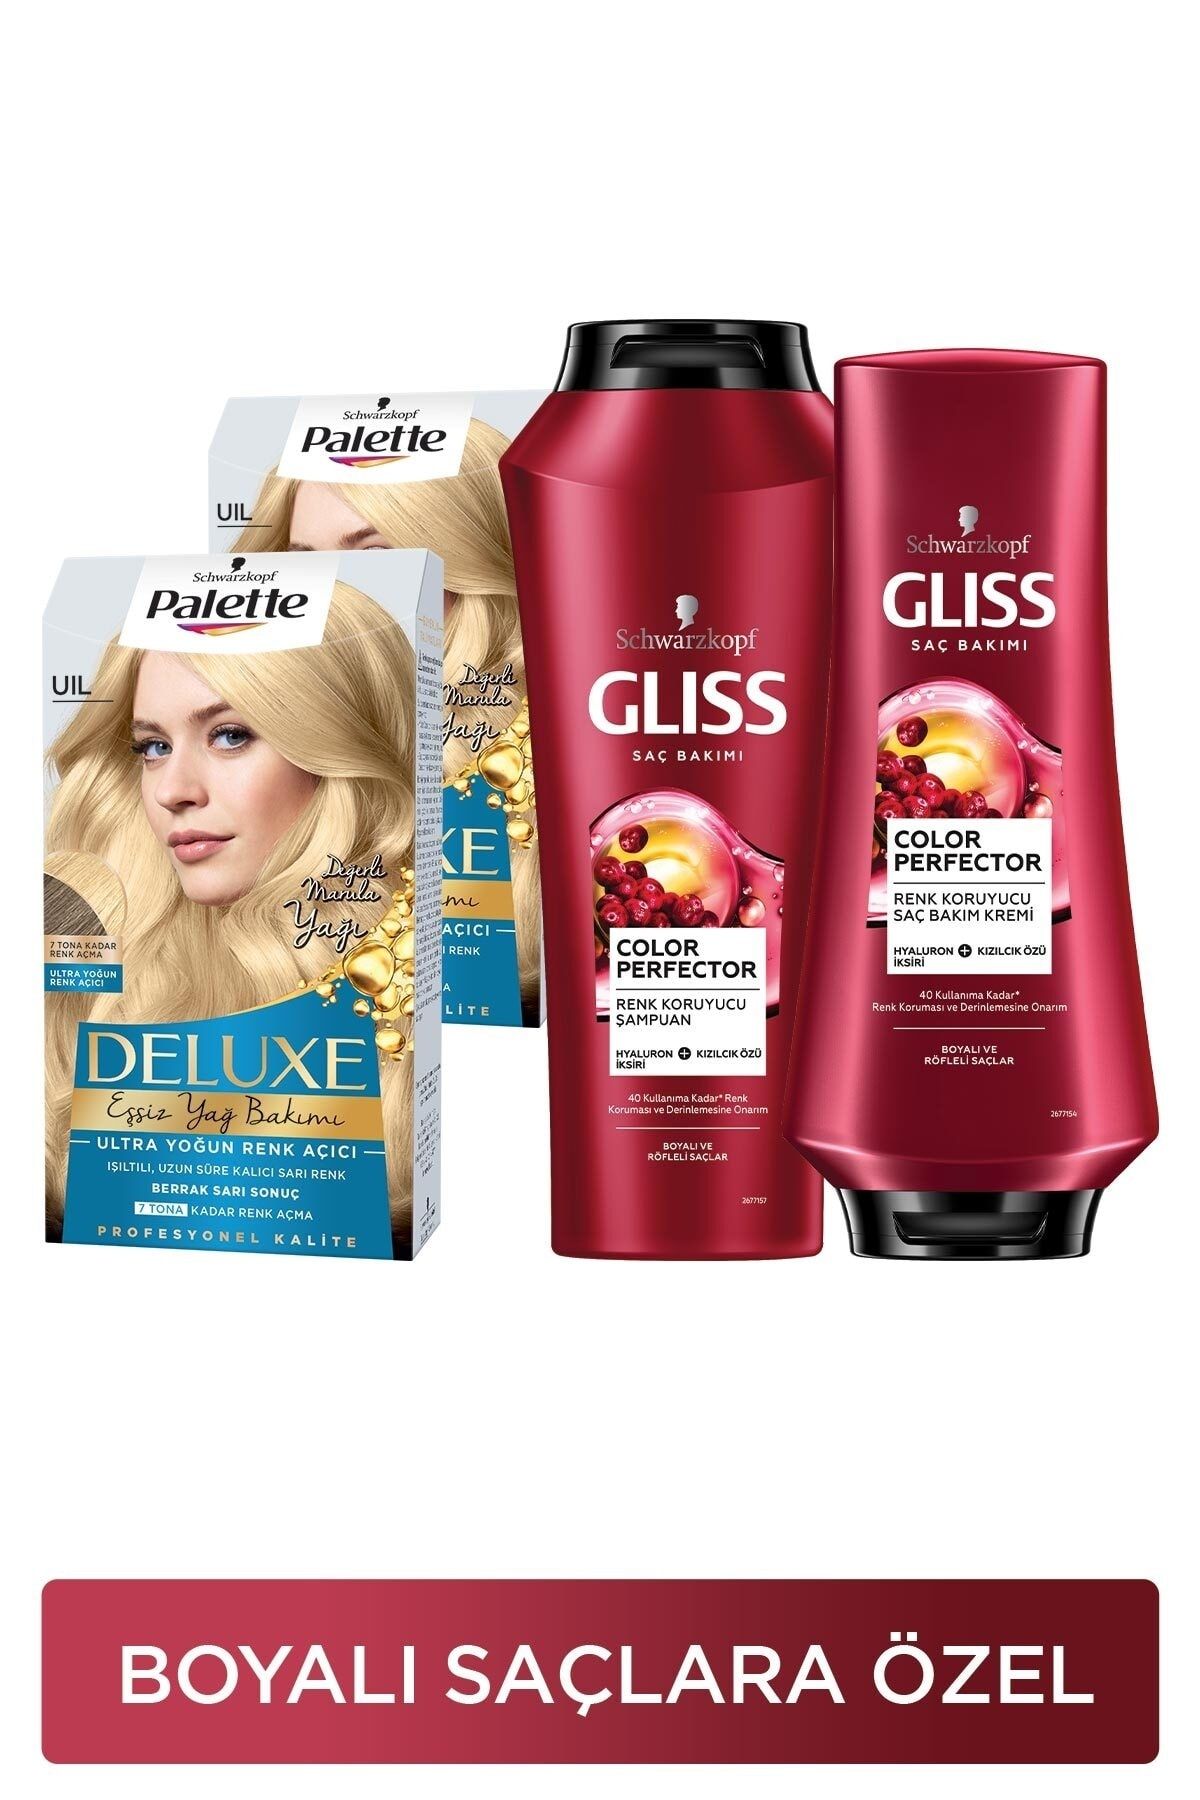 Gliss Color Perfector Renk Koruyucu Şampuan 500 Ml+uıl Ultra Yoğun Renk Açıcıx2 Adet